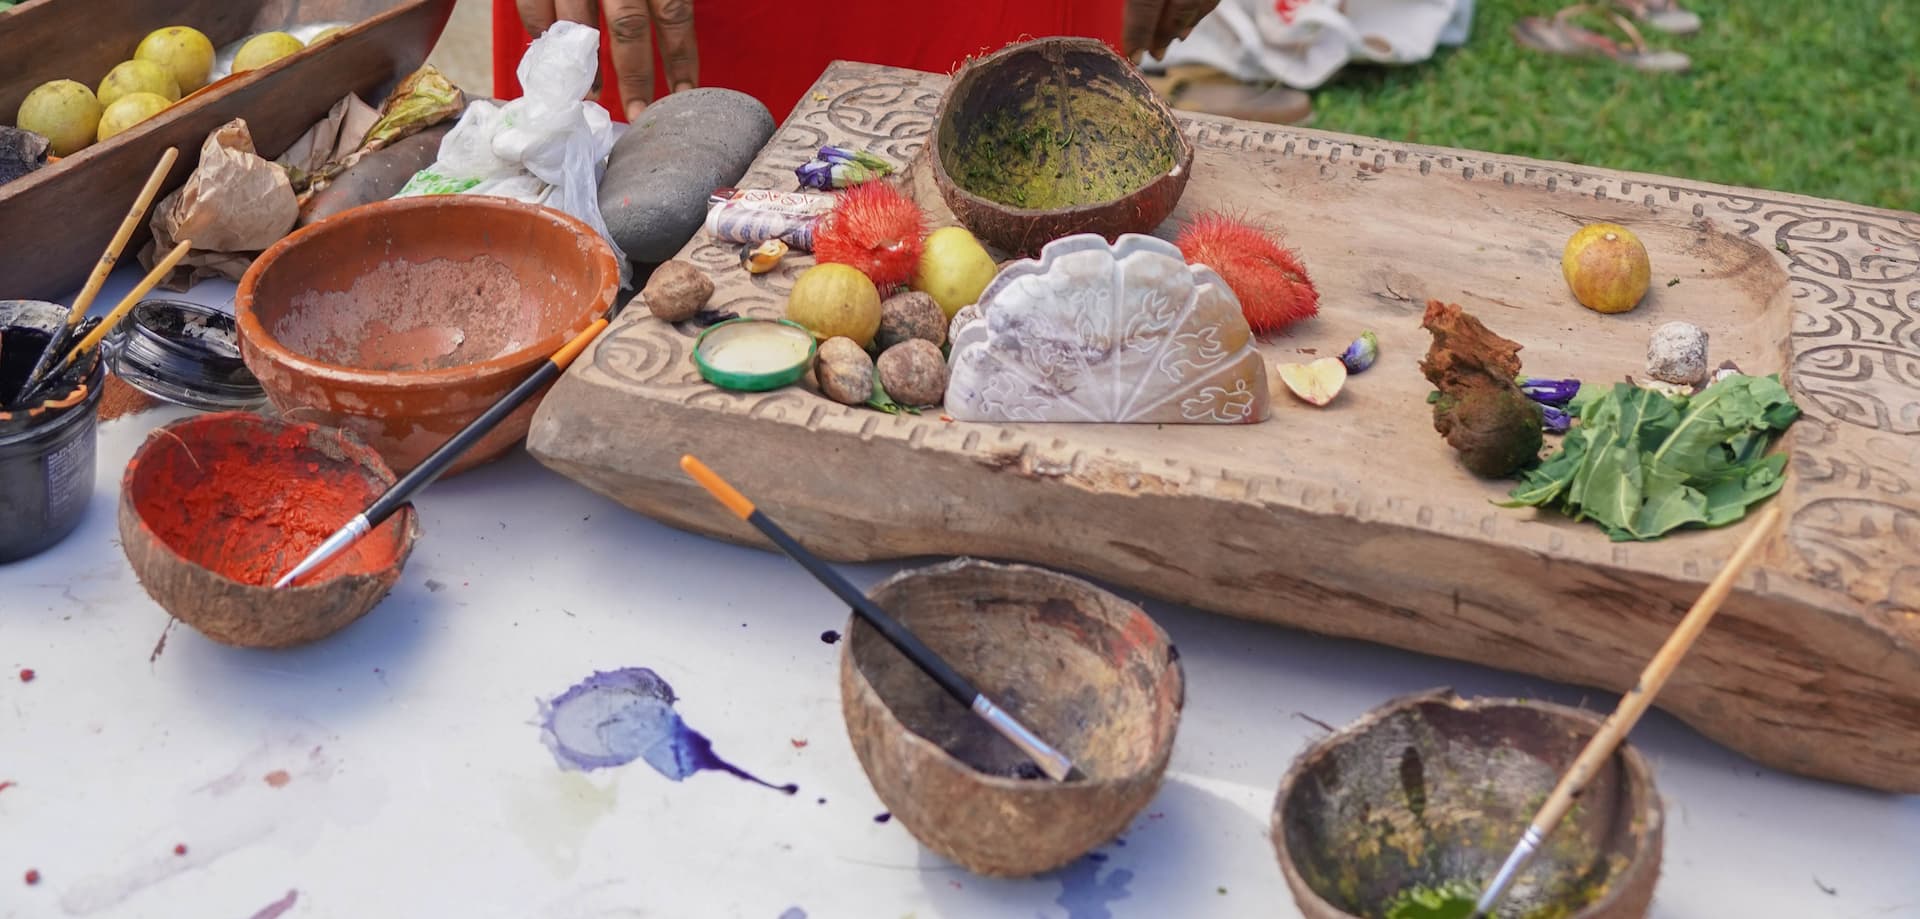 Atelier de fabrication de peintures naturelles à Tahiti. 4 noix de coco avec peintures naturelles et pinceaux posés sur une table. Immersion dans l'Art Polynésien : Tatouages, Sculptures, et Peintures.